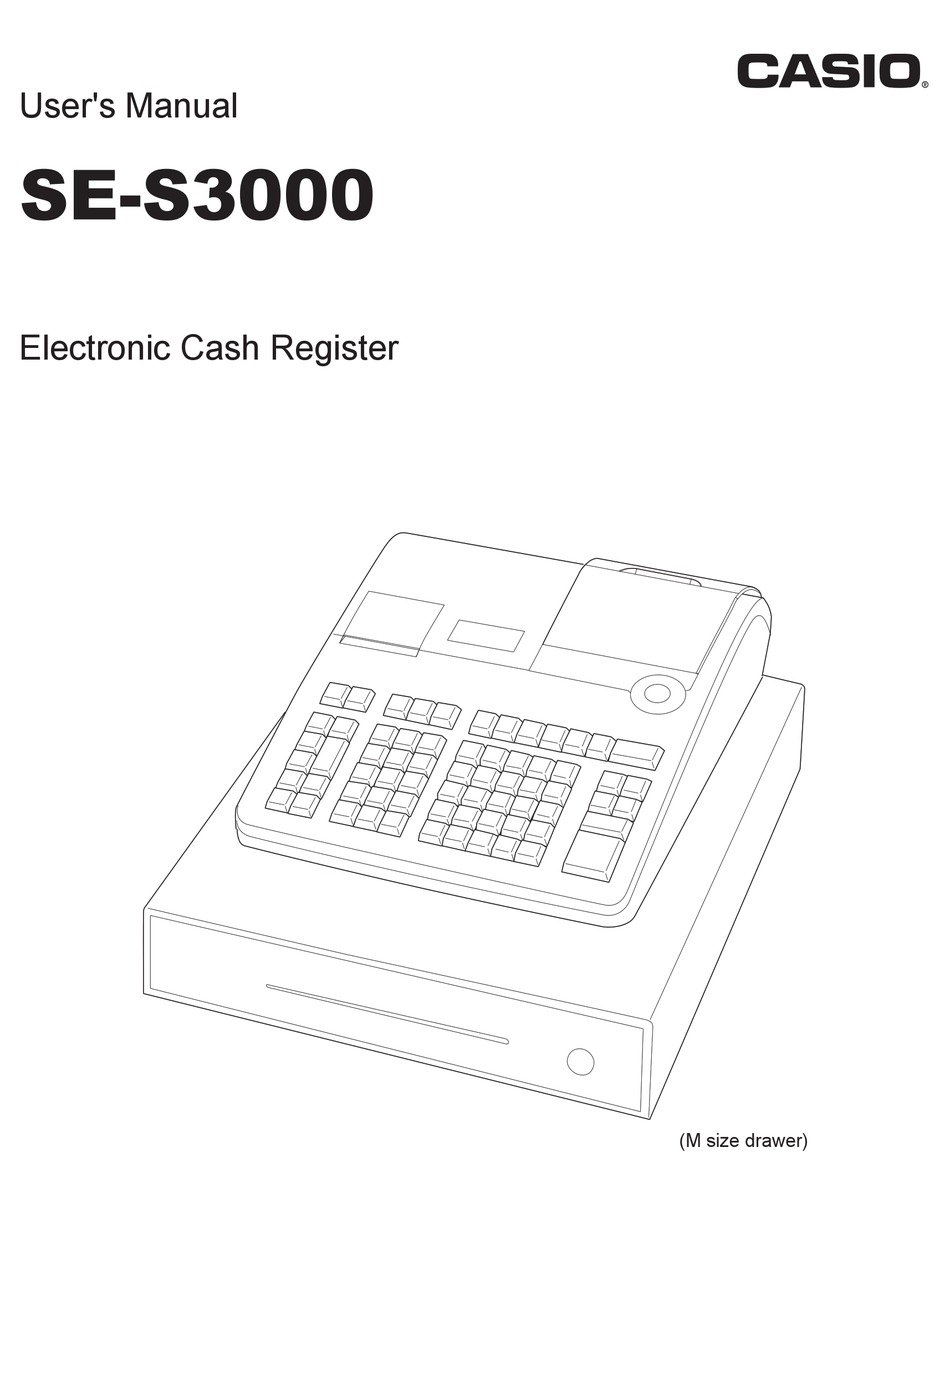 Casio SE-S3000 Electronic Cash Register Casio SES3000 Casio SE-53000